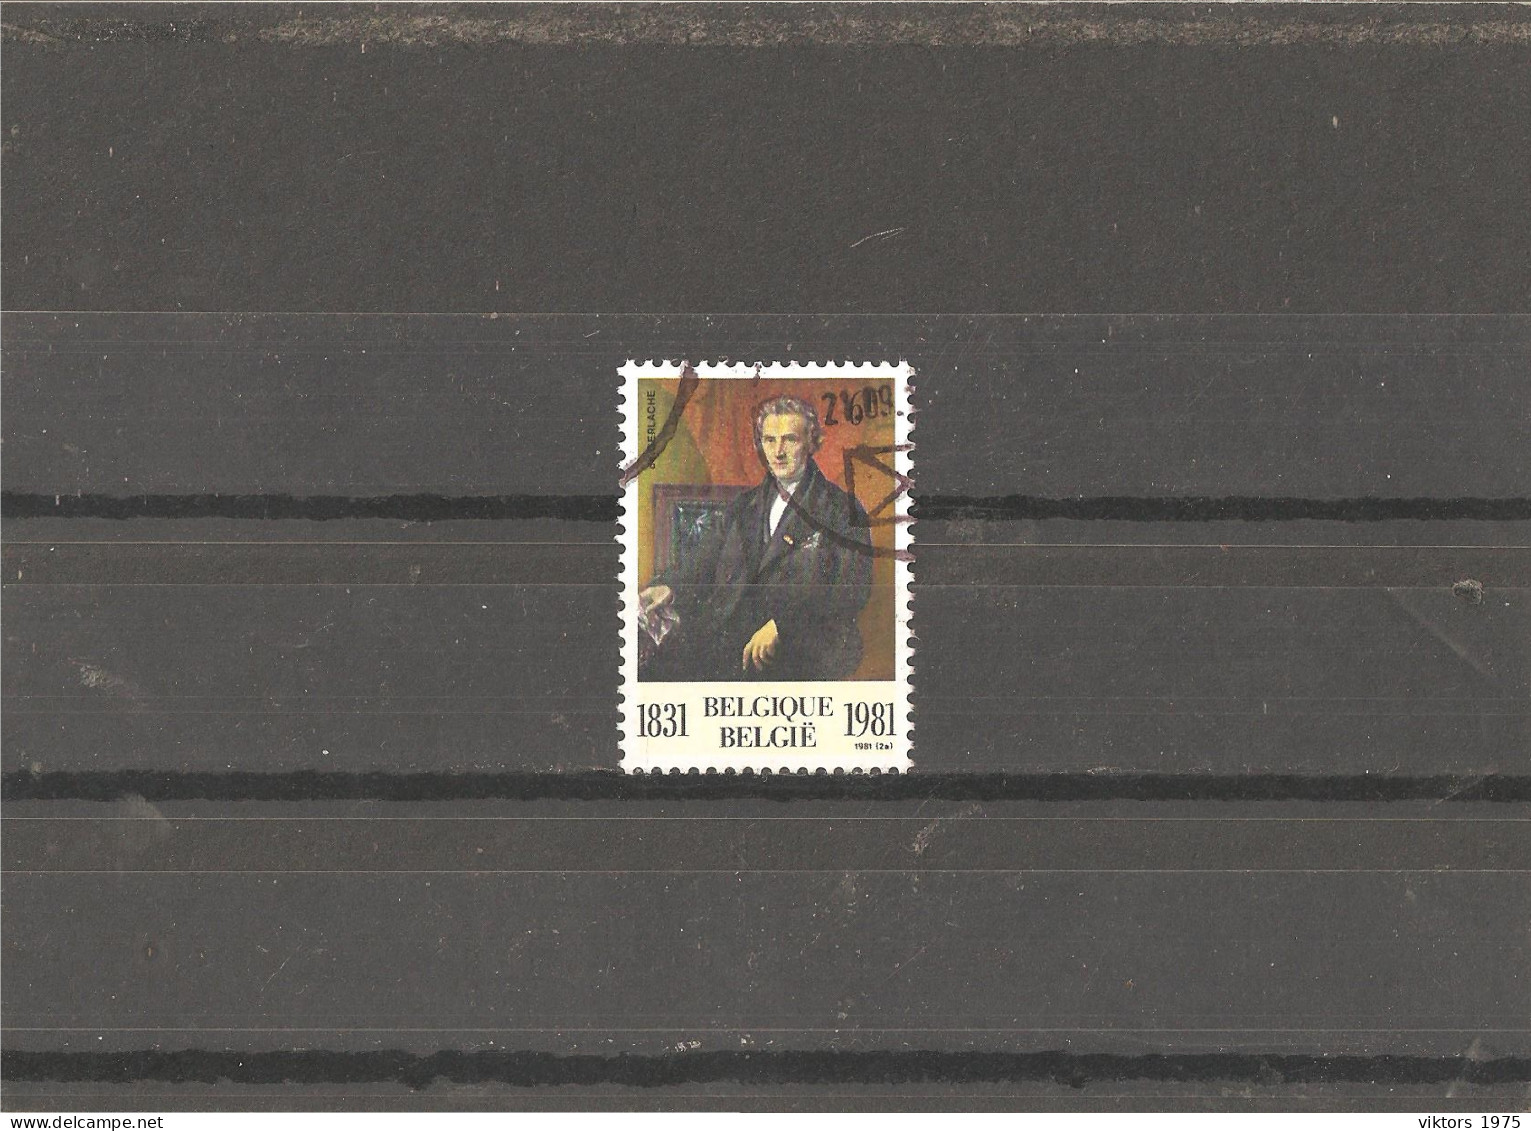 Used Stamp Nr.2053 In MICHEL Catalog - Gebruikt